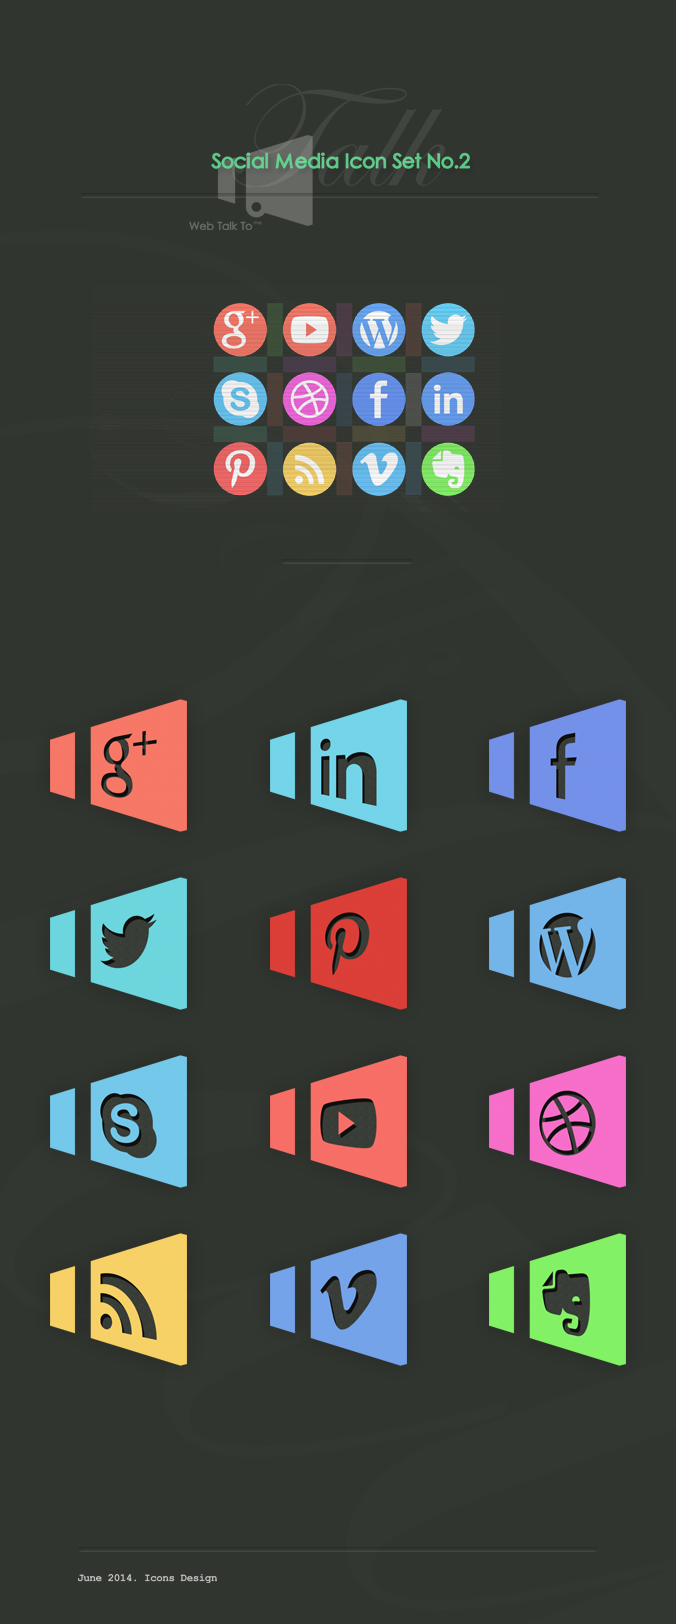 The Talk. Social media icons set no.2